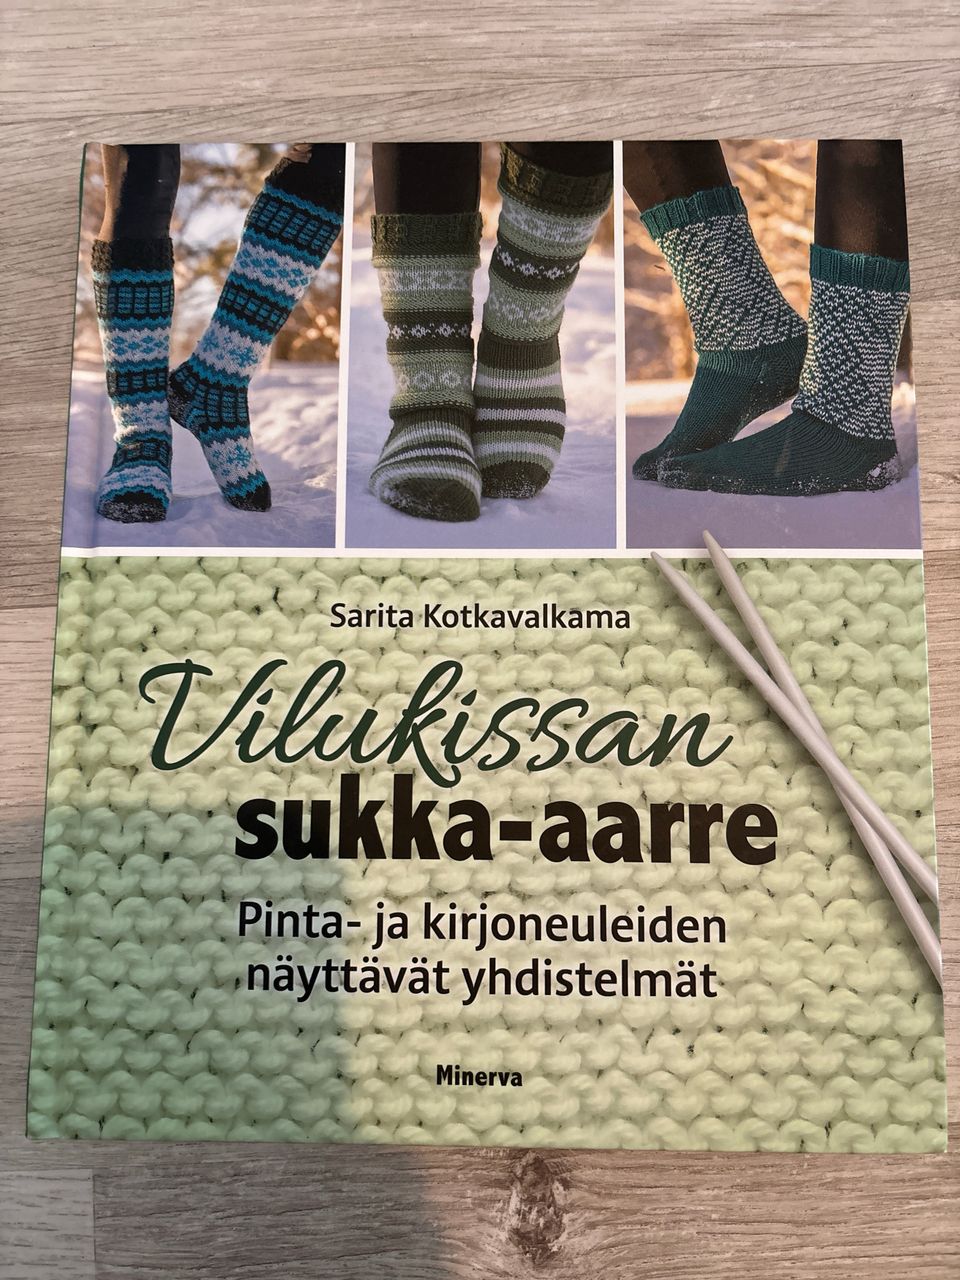 Sarita Kotkavalkama: Vilukissan sukka-aarre